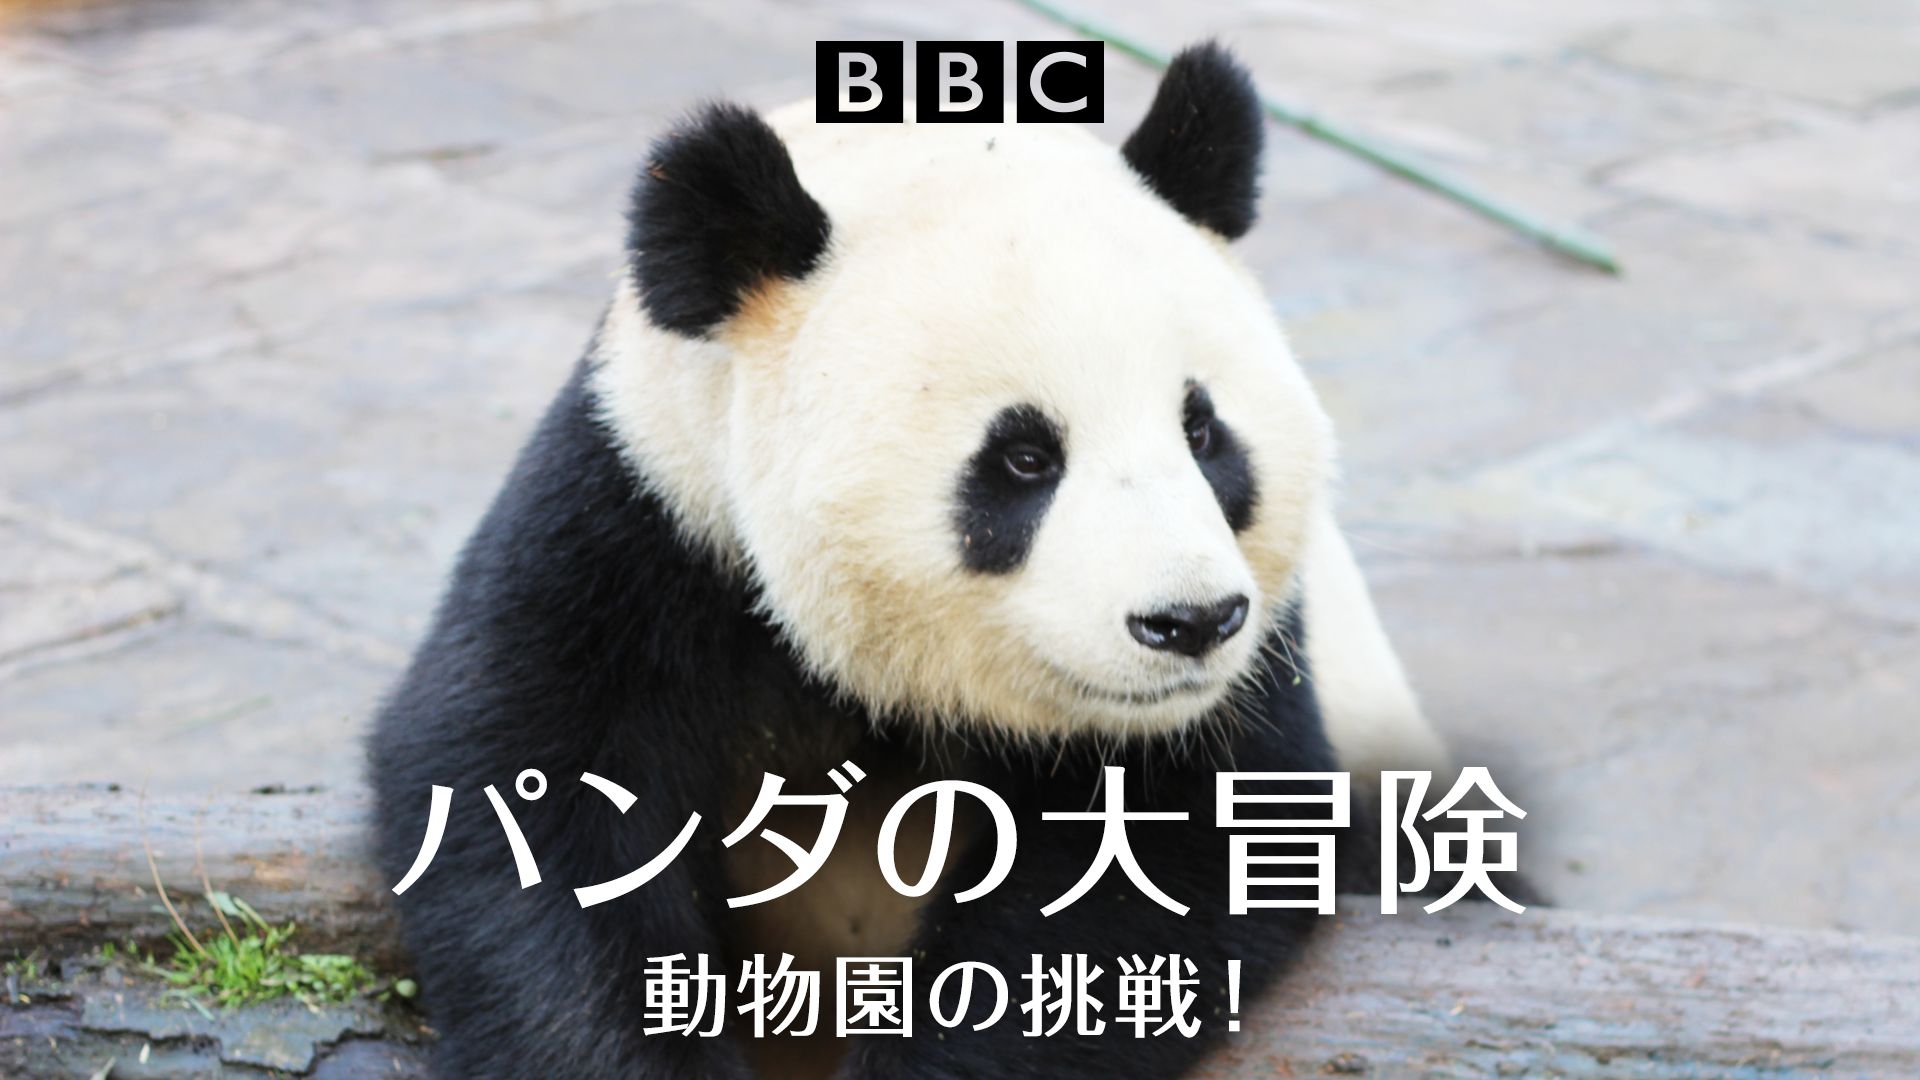 パンダの大冒険〜動物園の挑戦!